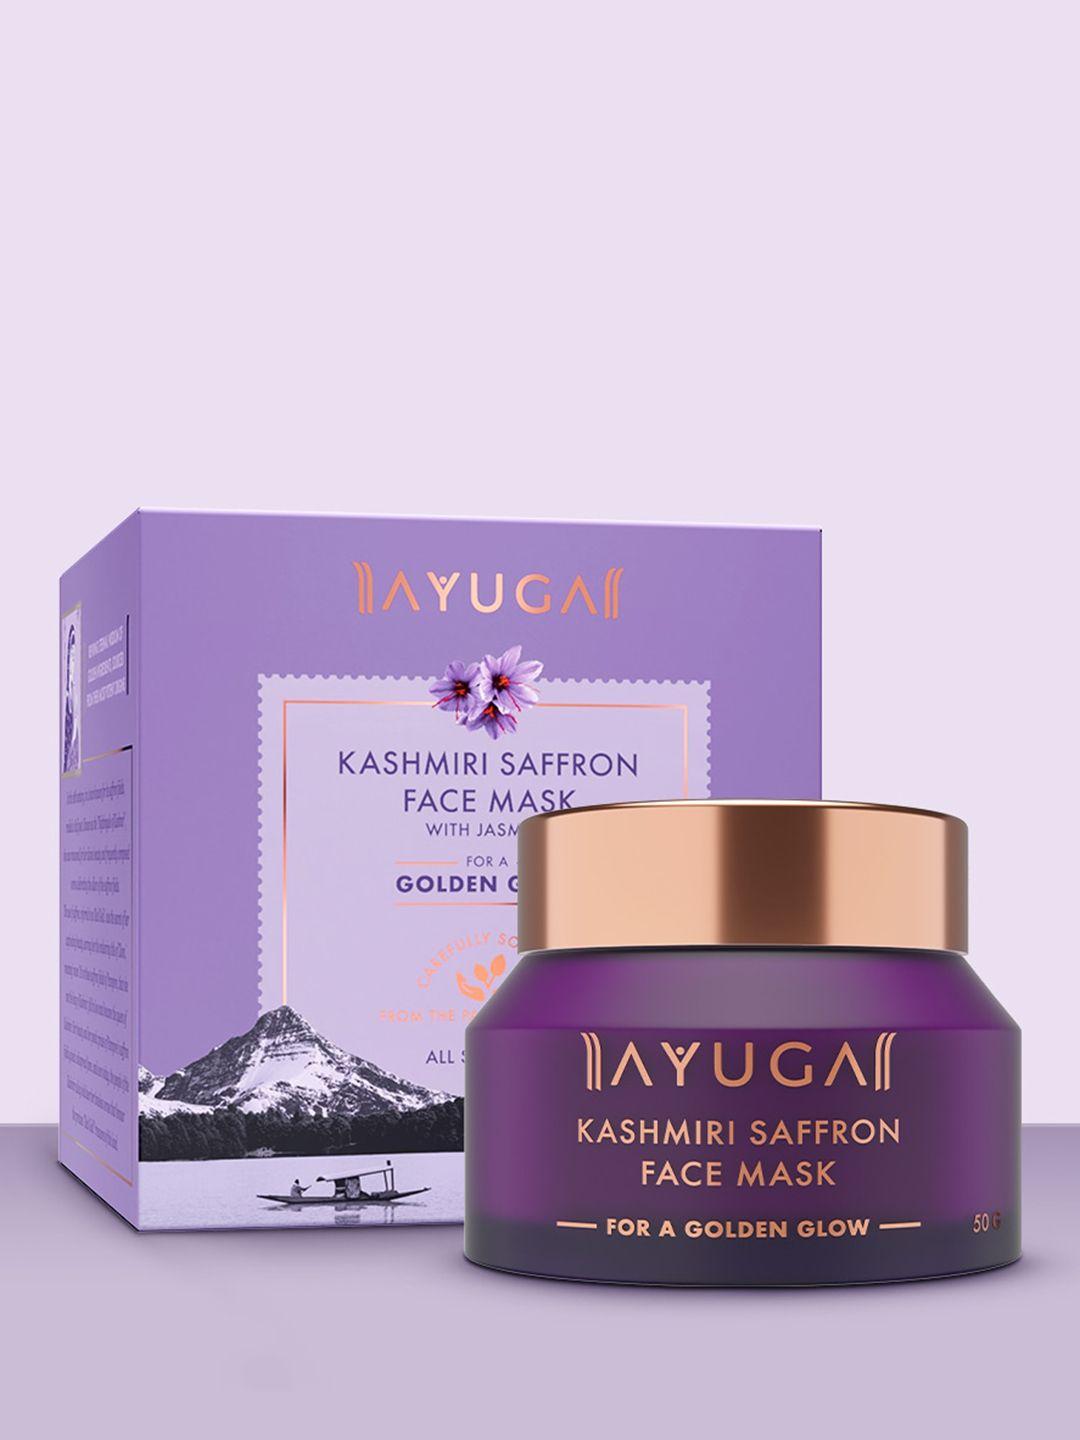 ayuga kashmiri saffron face mask with jasmine - 50g